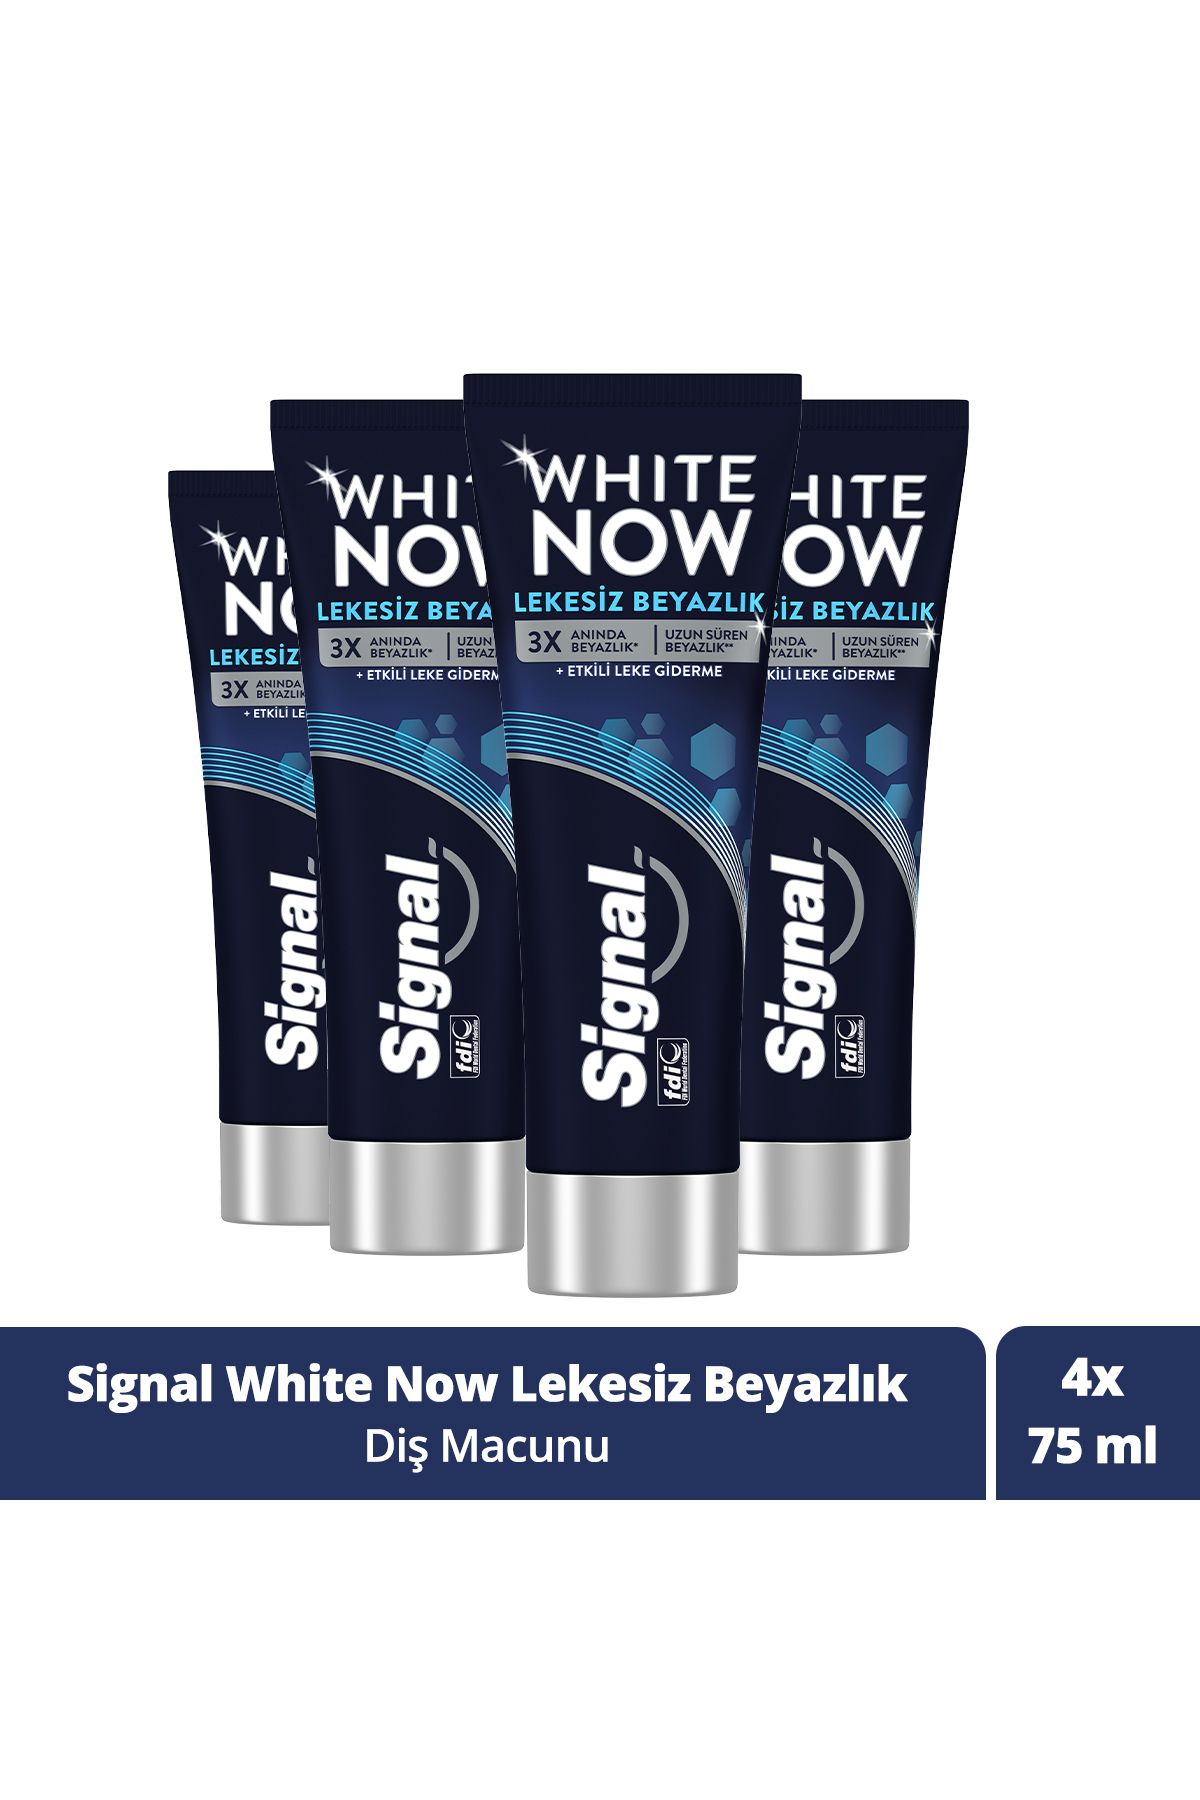 Signal White Now Leke Karşıtı Kahve Ve Sigara Içenler Için Beyazlatıcı Diş Macunu 75ml X 4